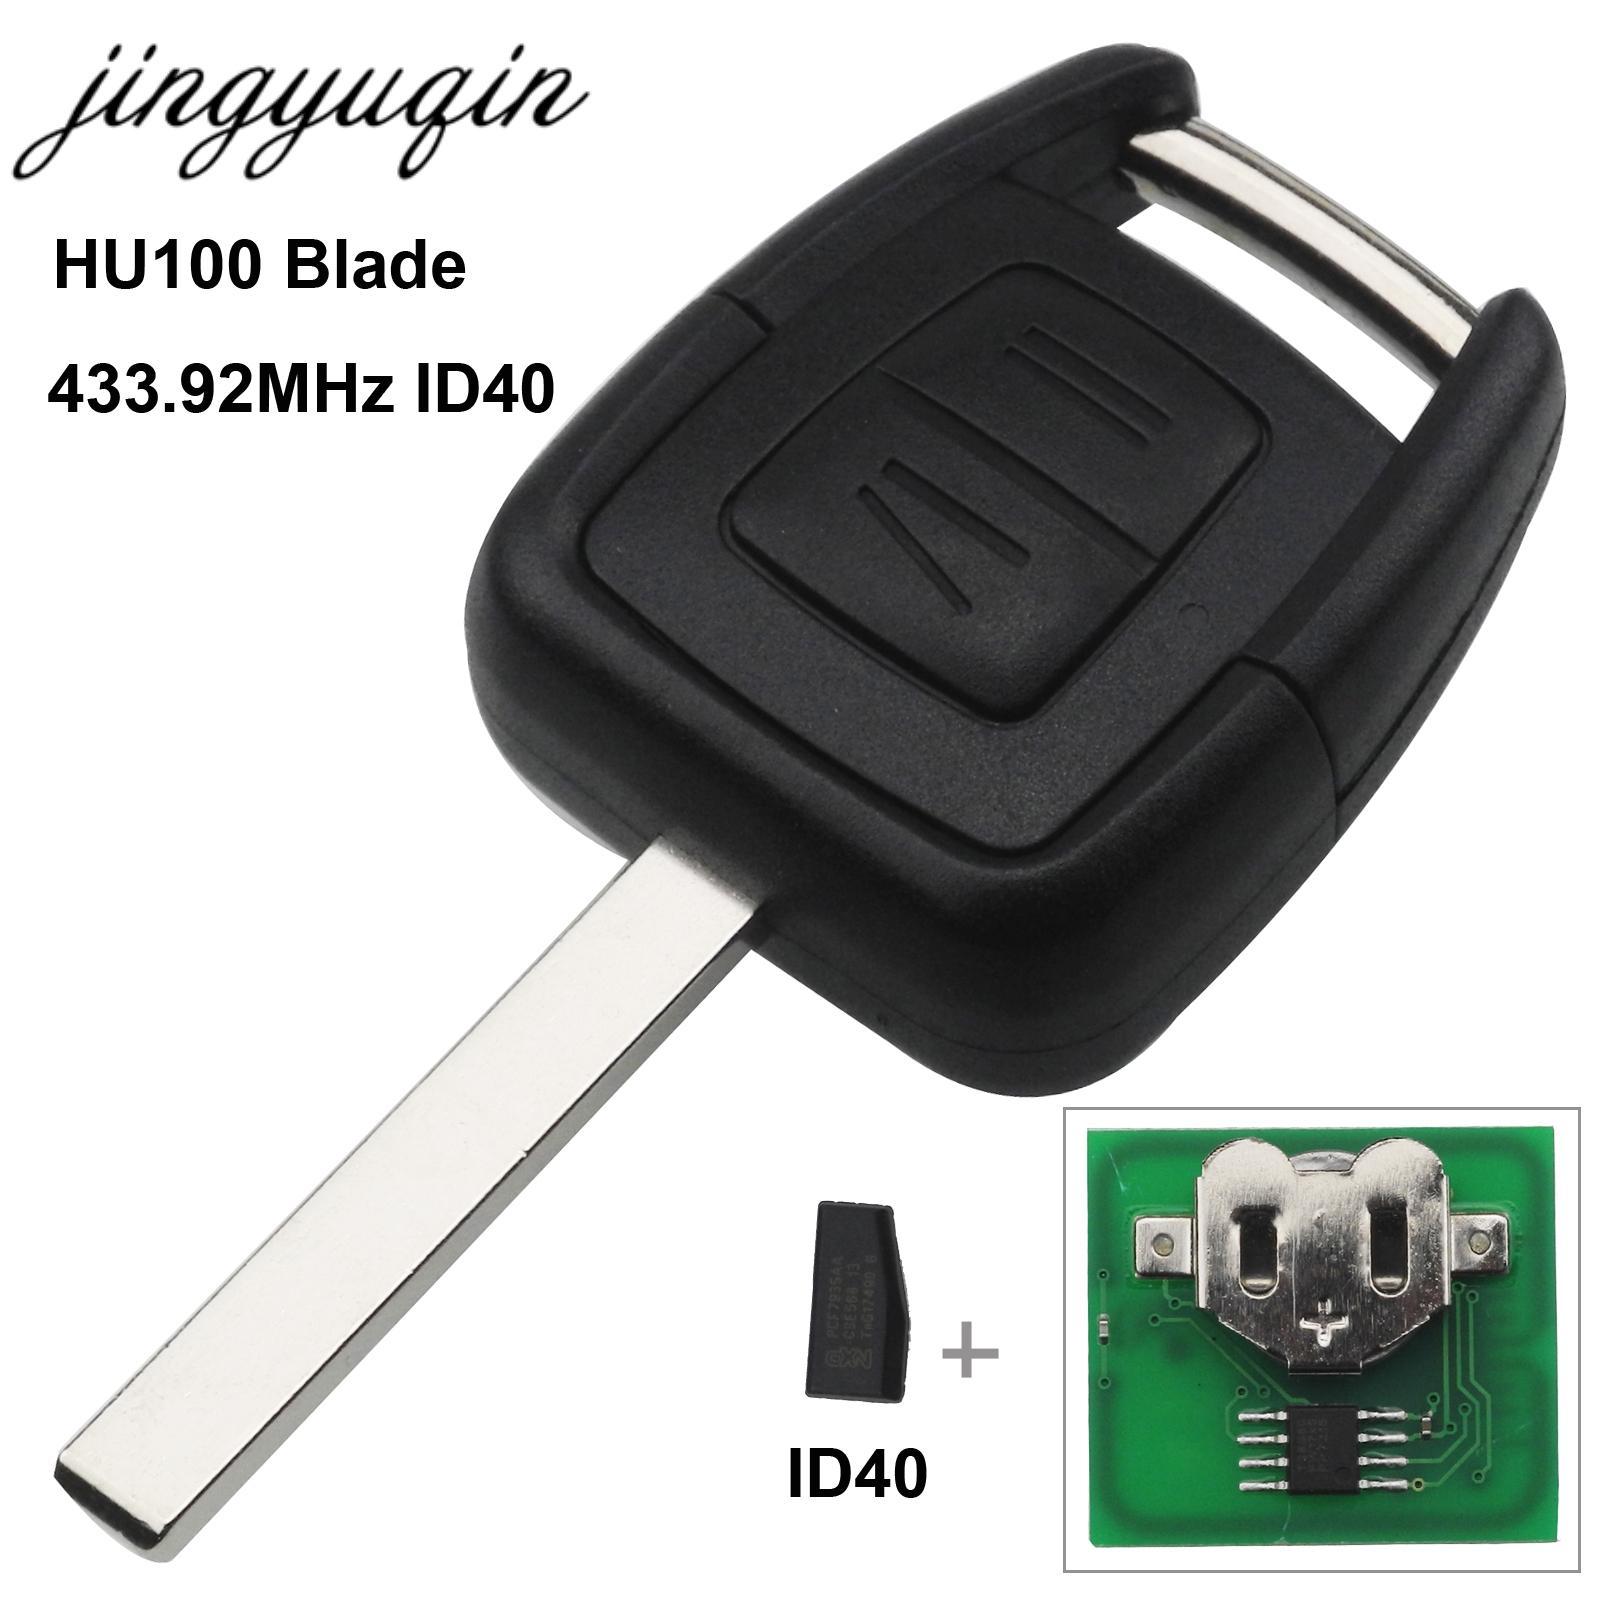 Изображение товара: Jingyuqin 2 кнопки 433 МГц брелок дистанционный ключ для Opel Vauxhall Vectra Zafira OP1 24424723 с чипом ID40 HU43 HU100 YM28 HU46 Blade